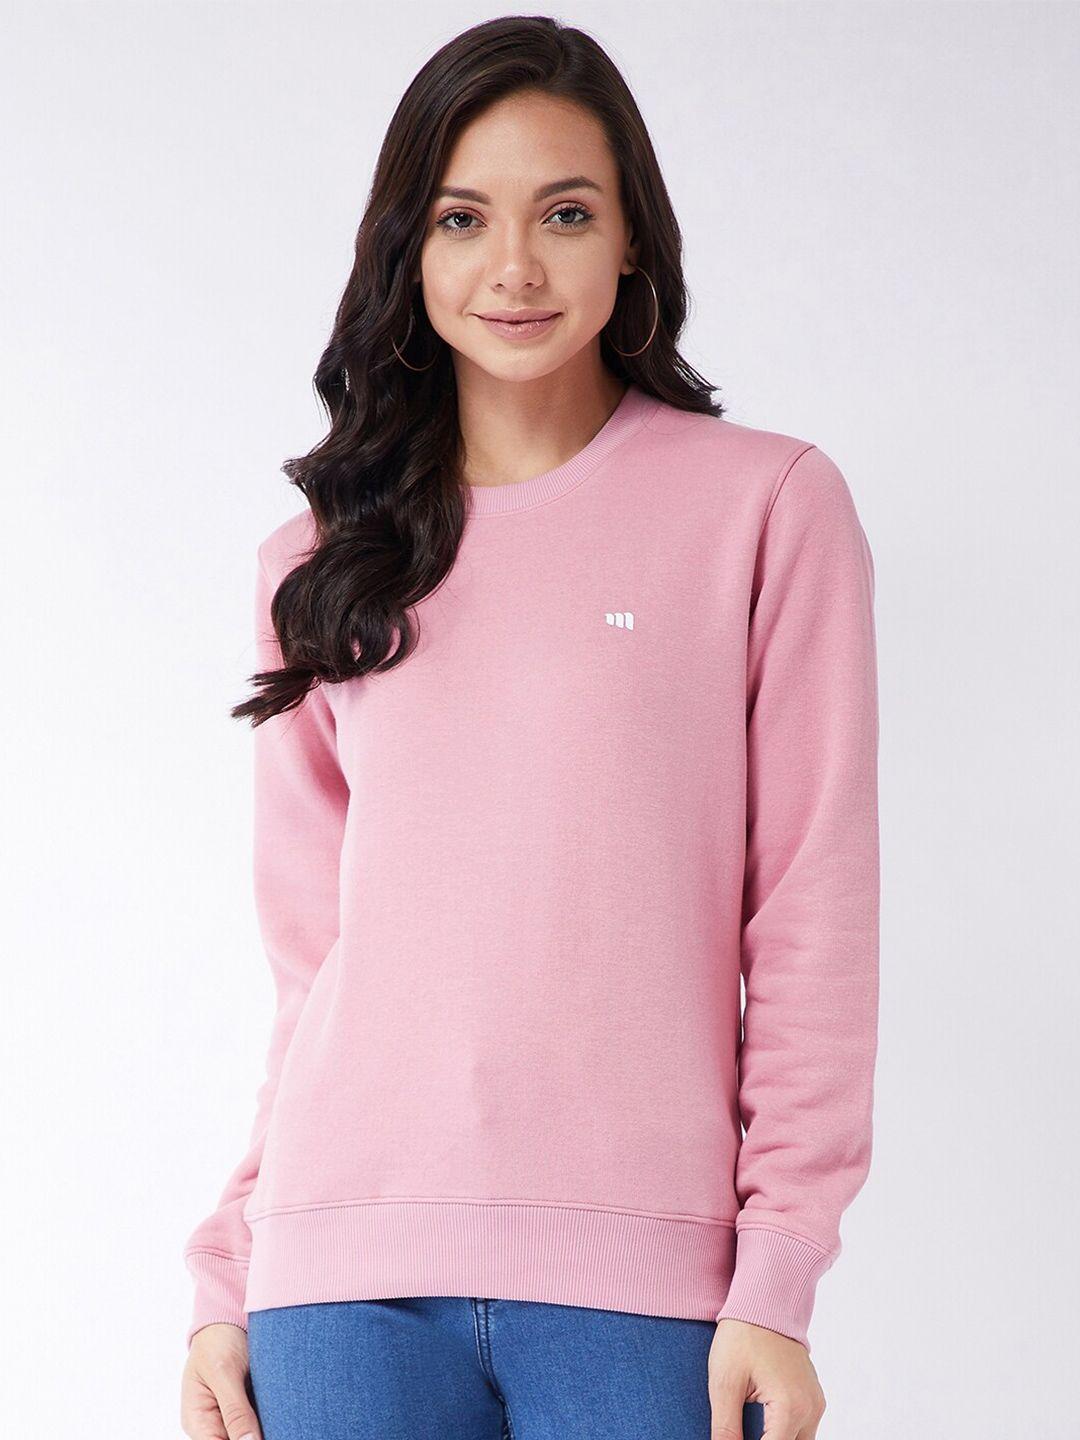 modeve women pink sweatshirt